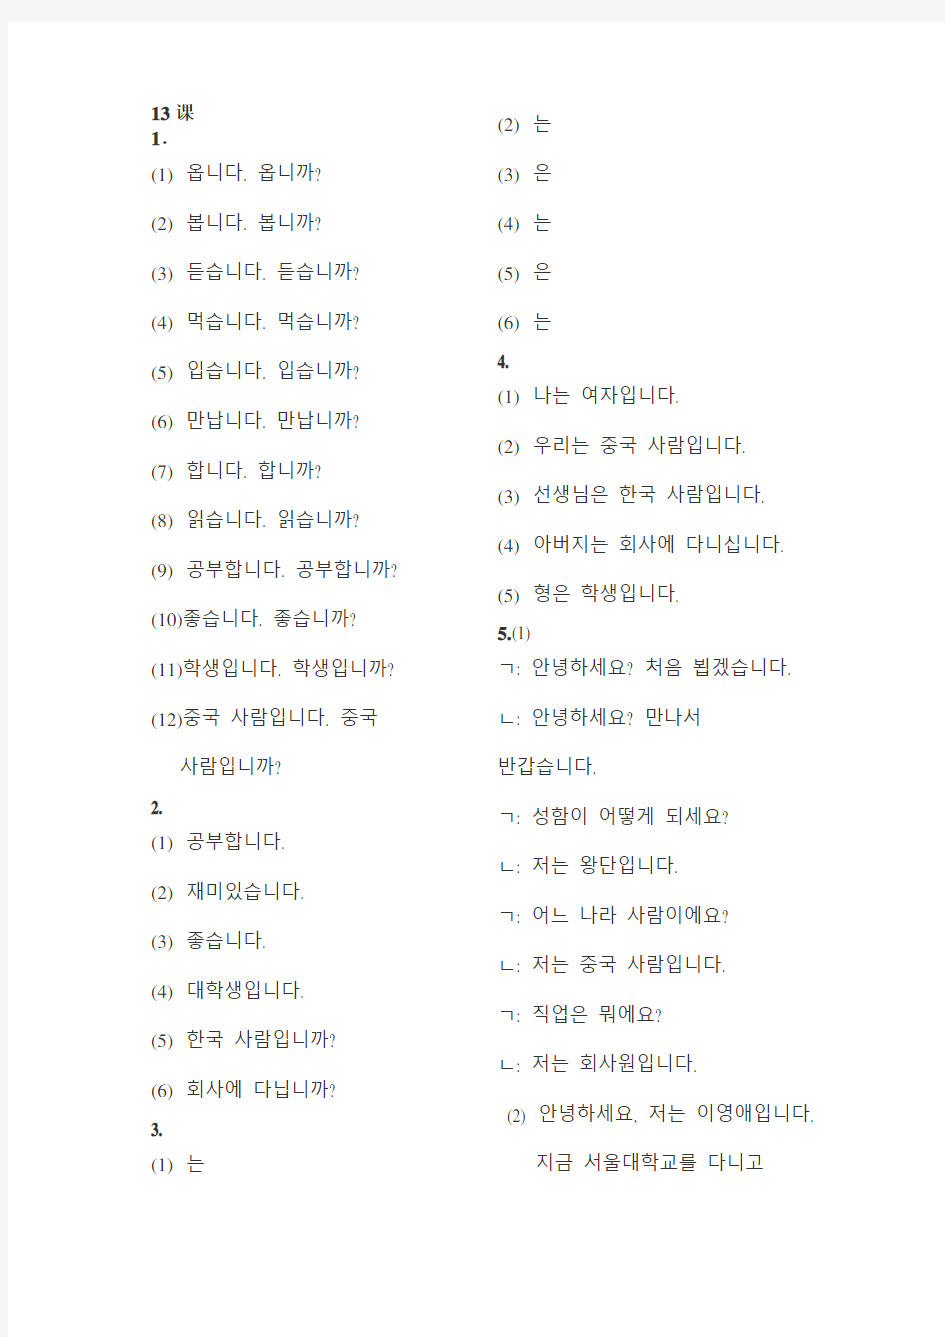 标准韩国语第一册课后练习答案